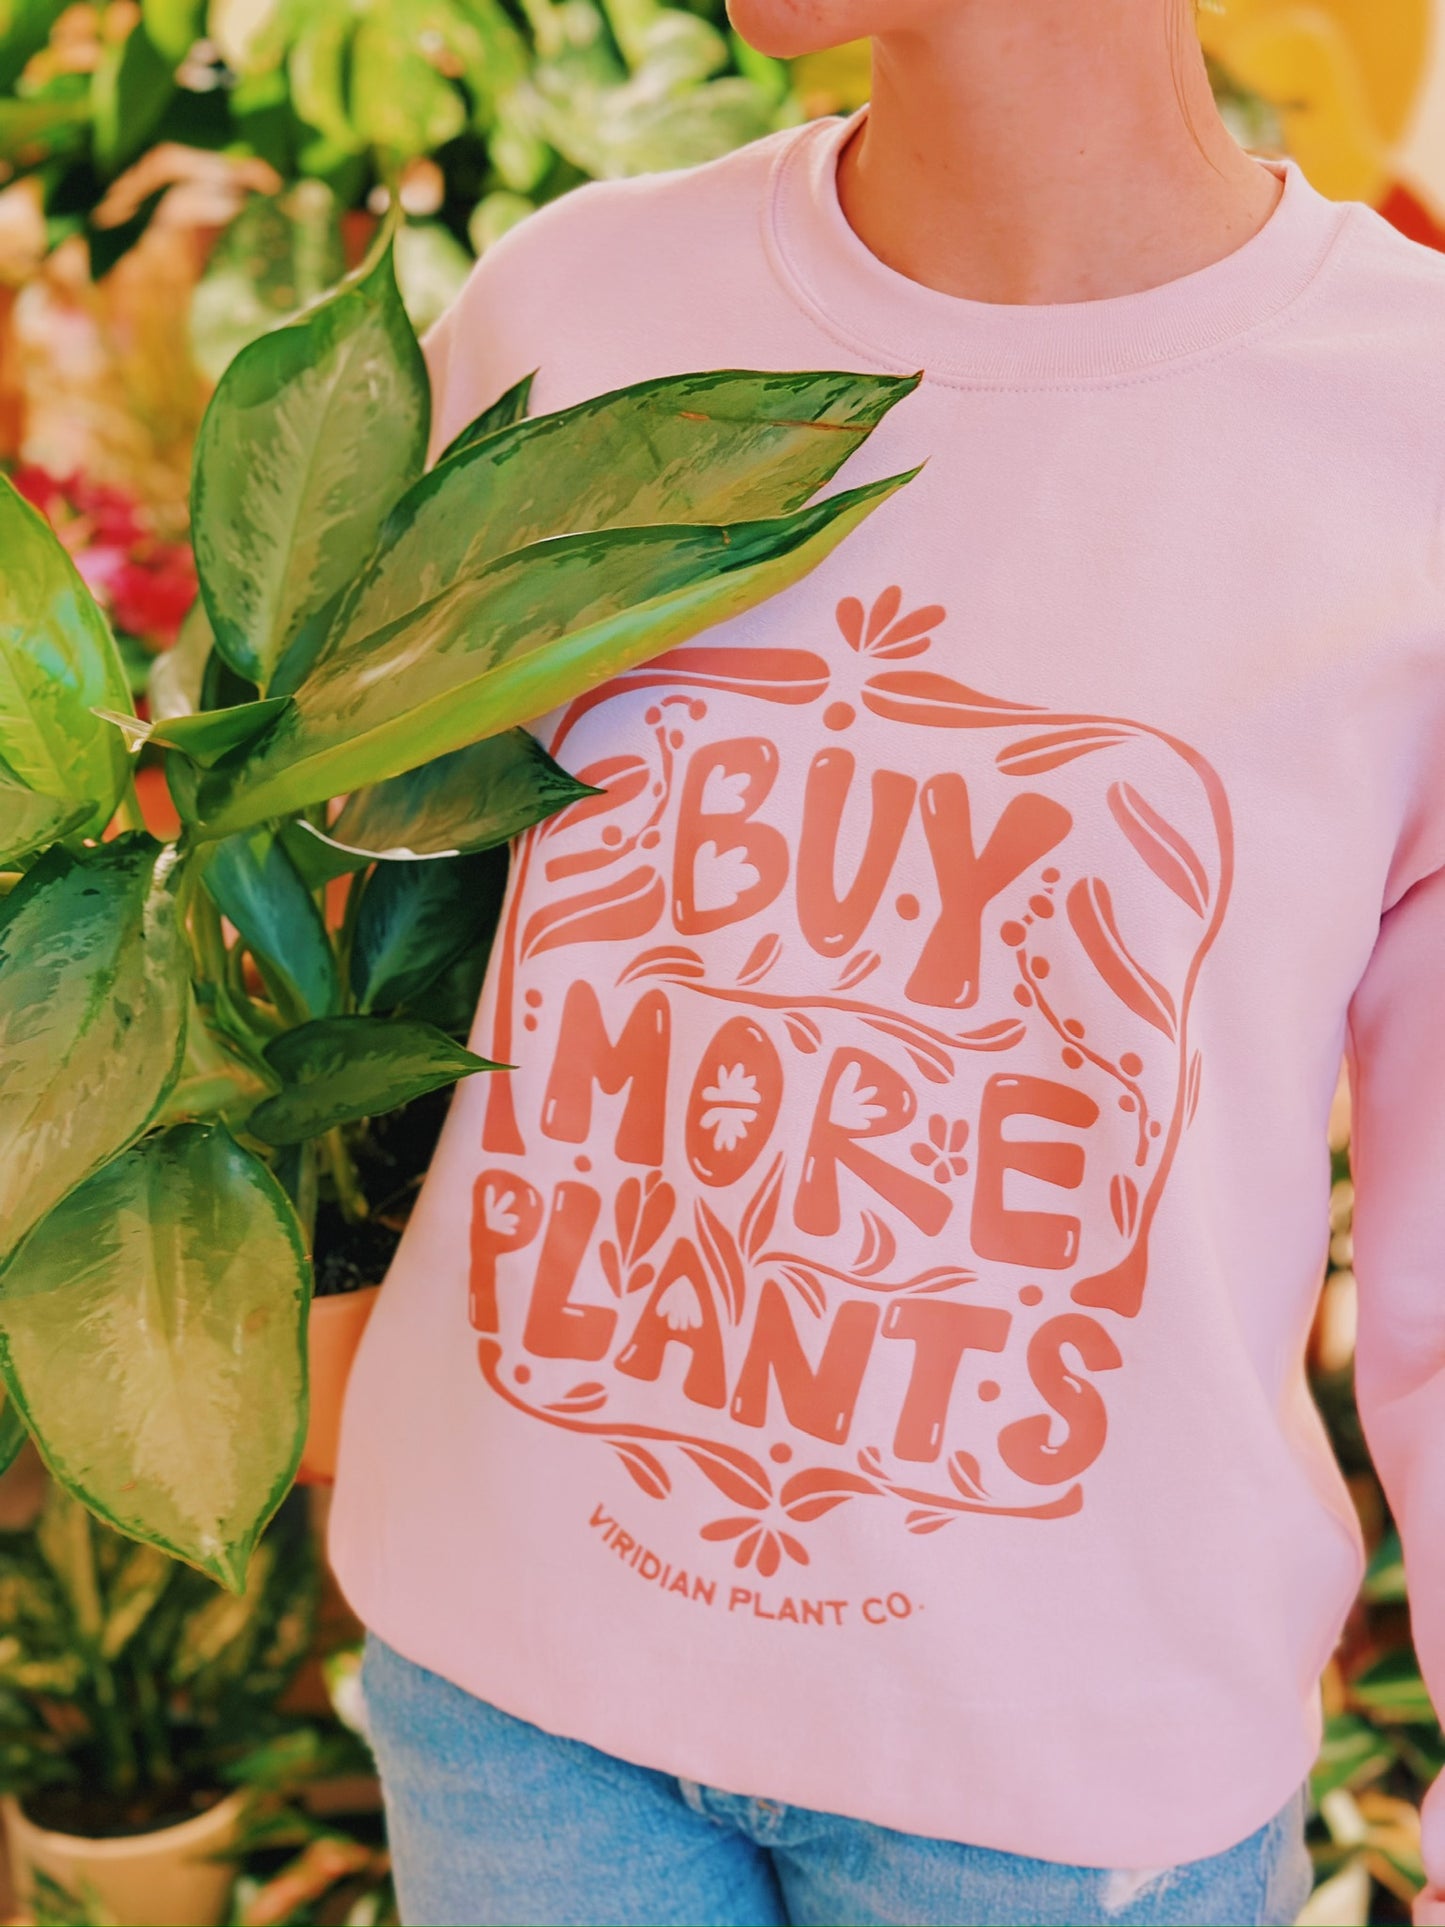 Buy More Plants Crewneck